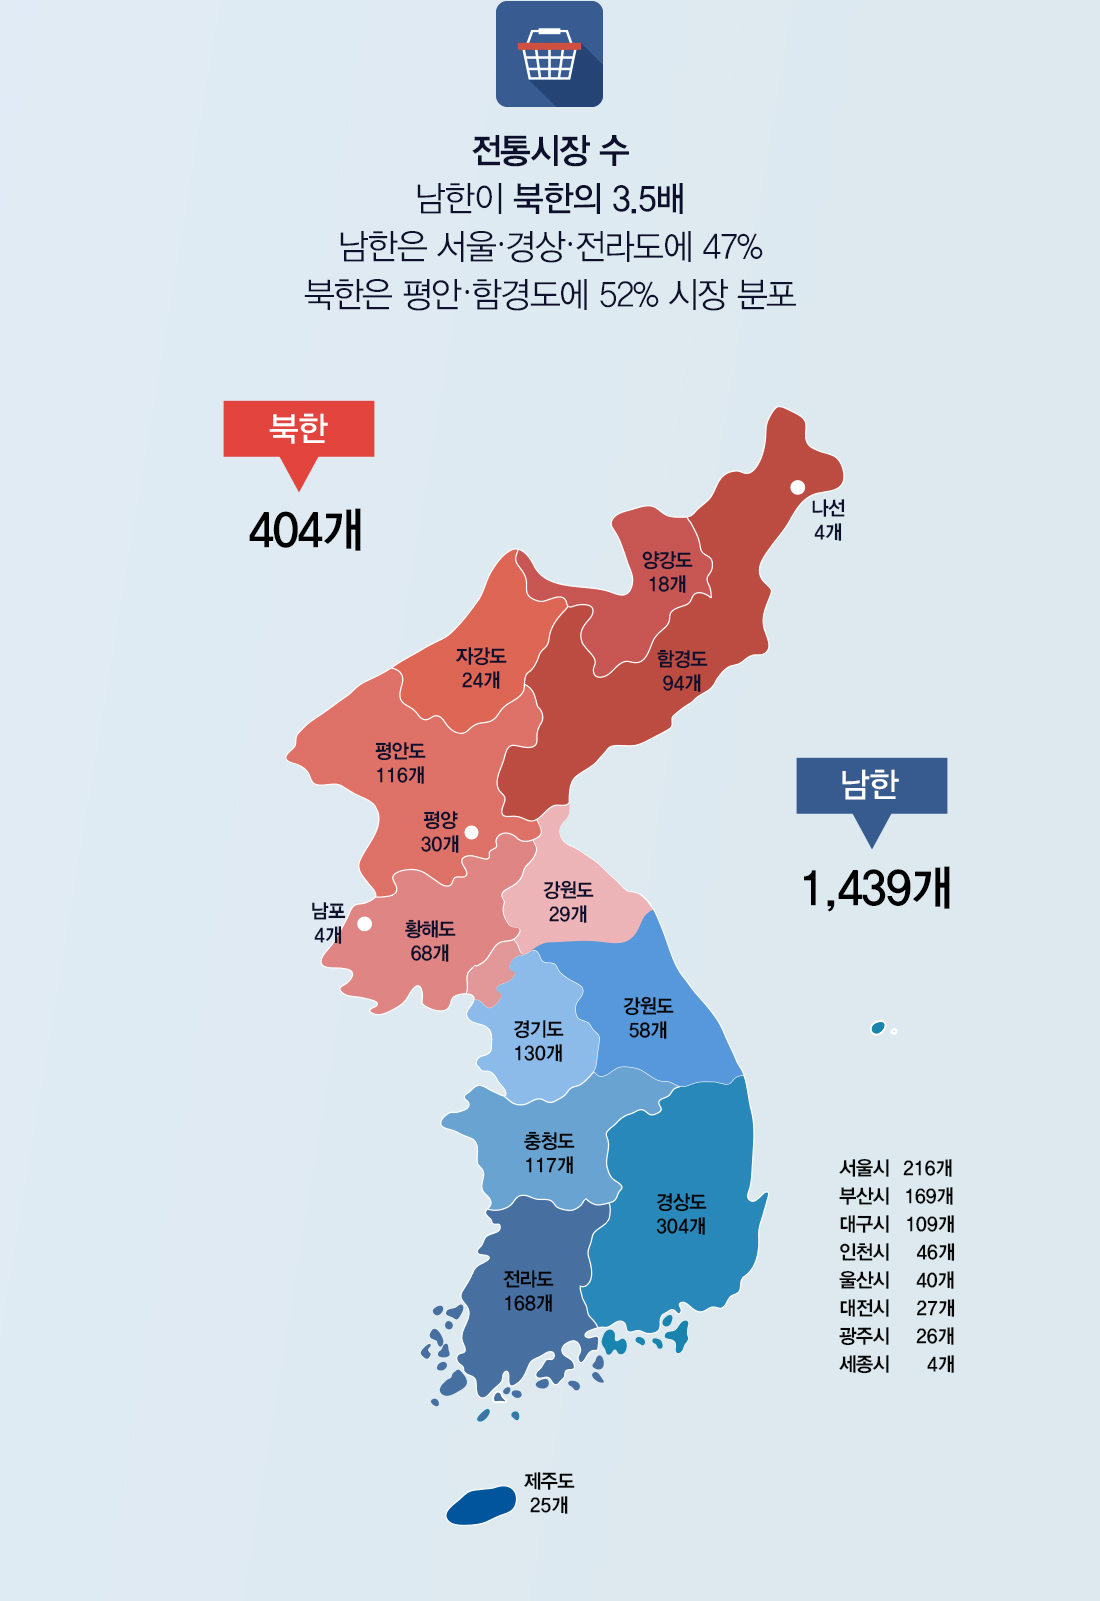 전통시장 수 남한이 북한의 3.5배 남한은 서울·경상·전라 지역에 47% 북한은 27개 시에 44% 시장 분포 (단, 비공식 ‘장마당’은 공식 시장보다 훨씬 많을 것으로 추정) * 남한 상점가 및 남북한 무등록 시장 미포함